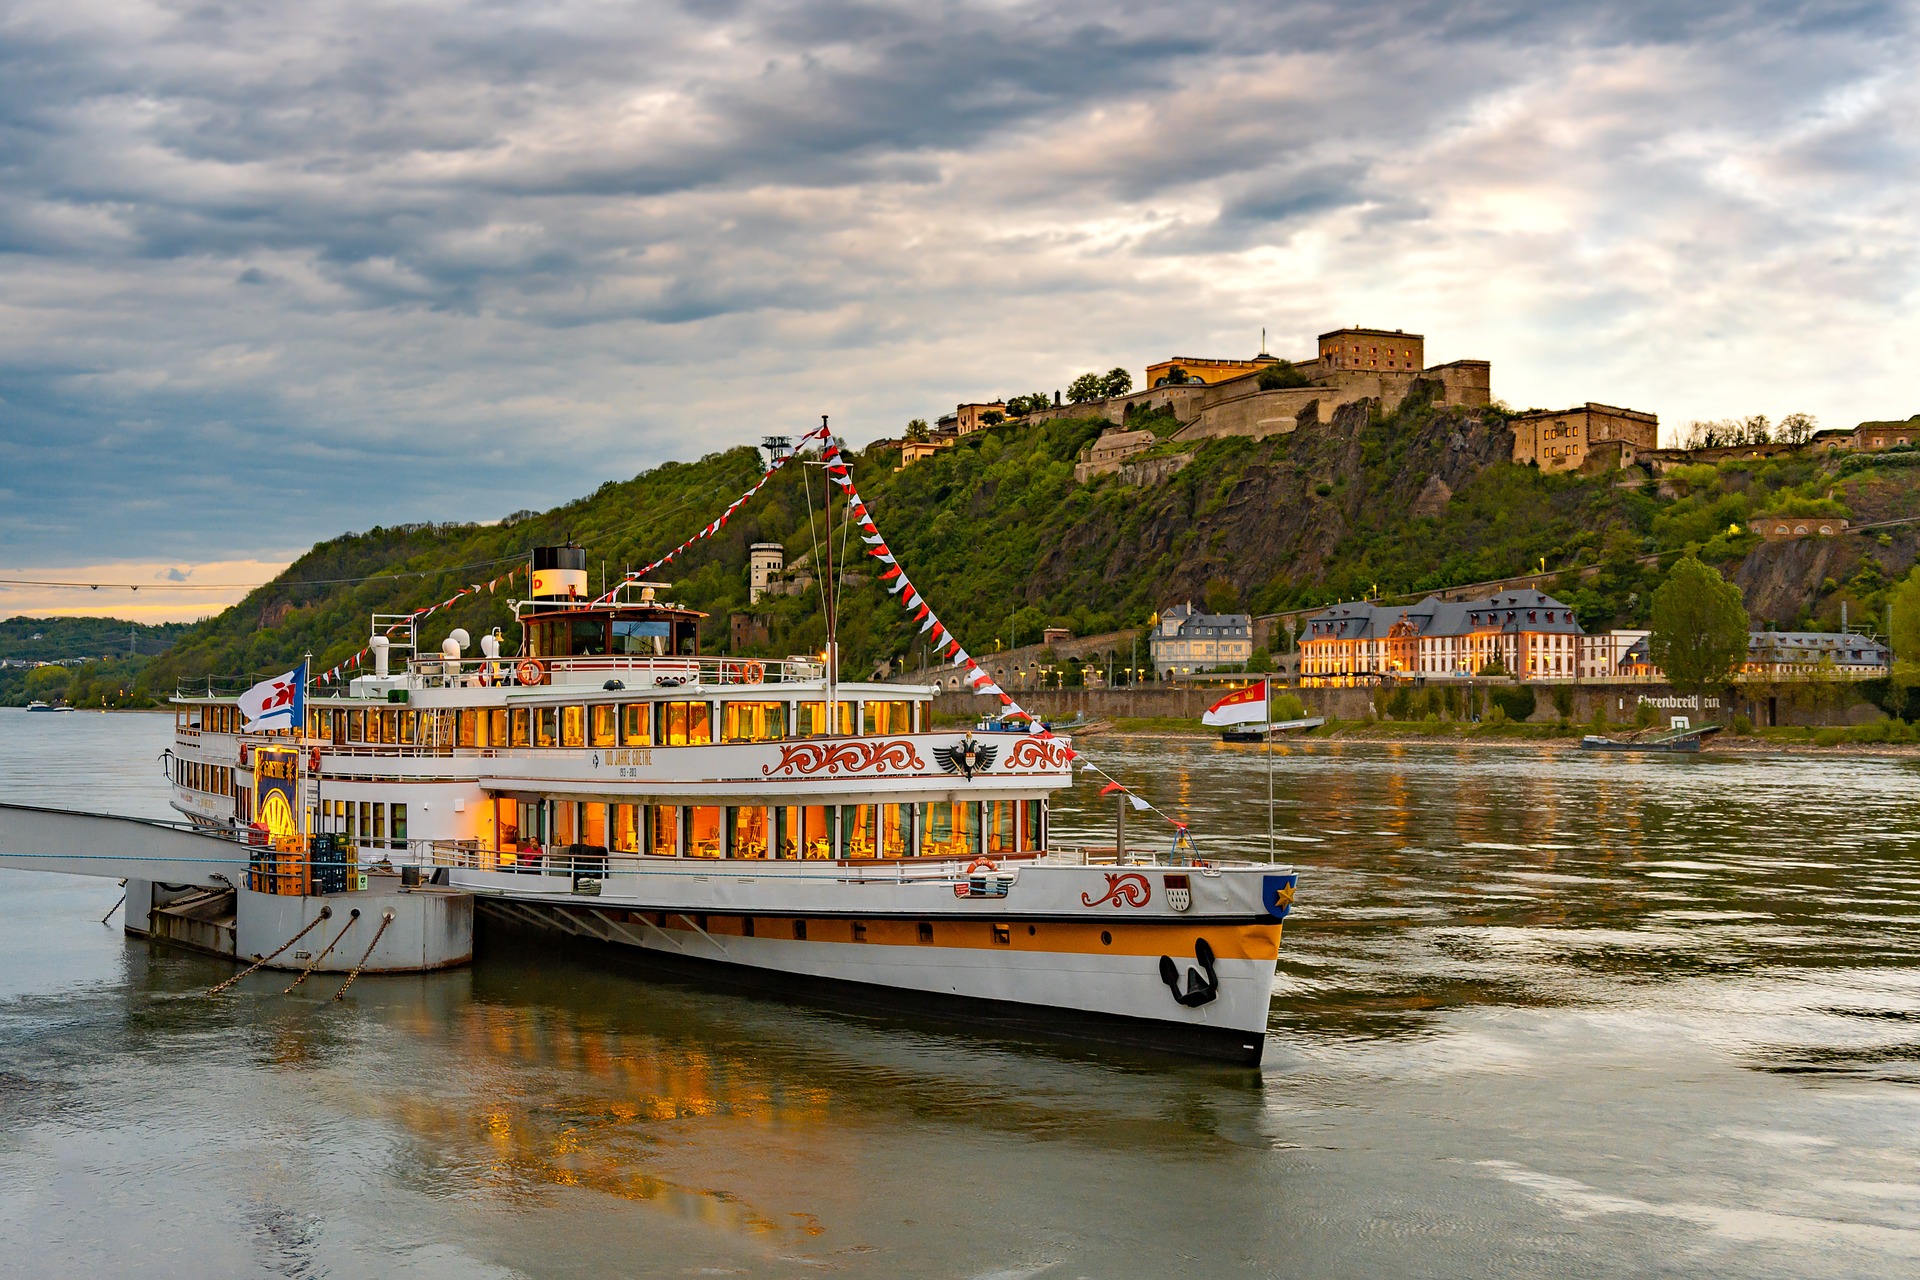 Koblenz (c) Bild von Kookay auf Pixabay